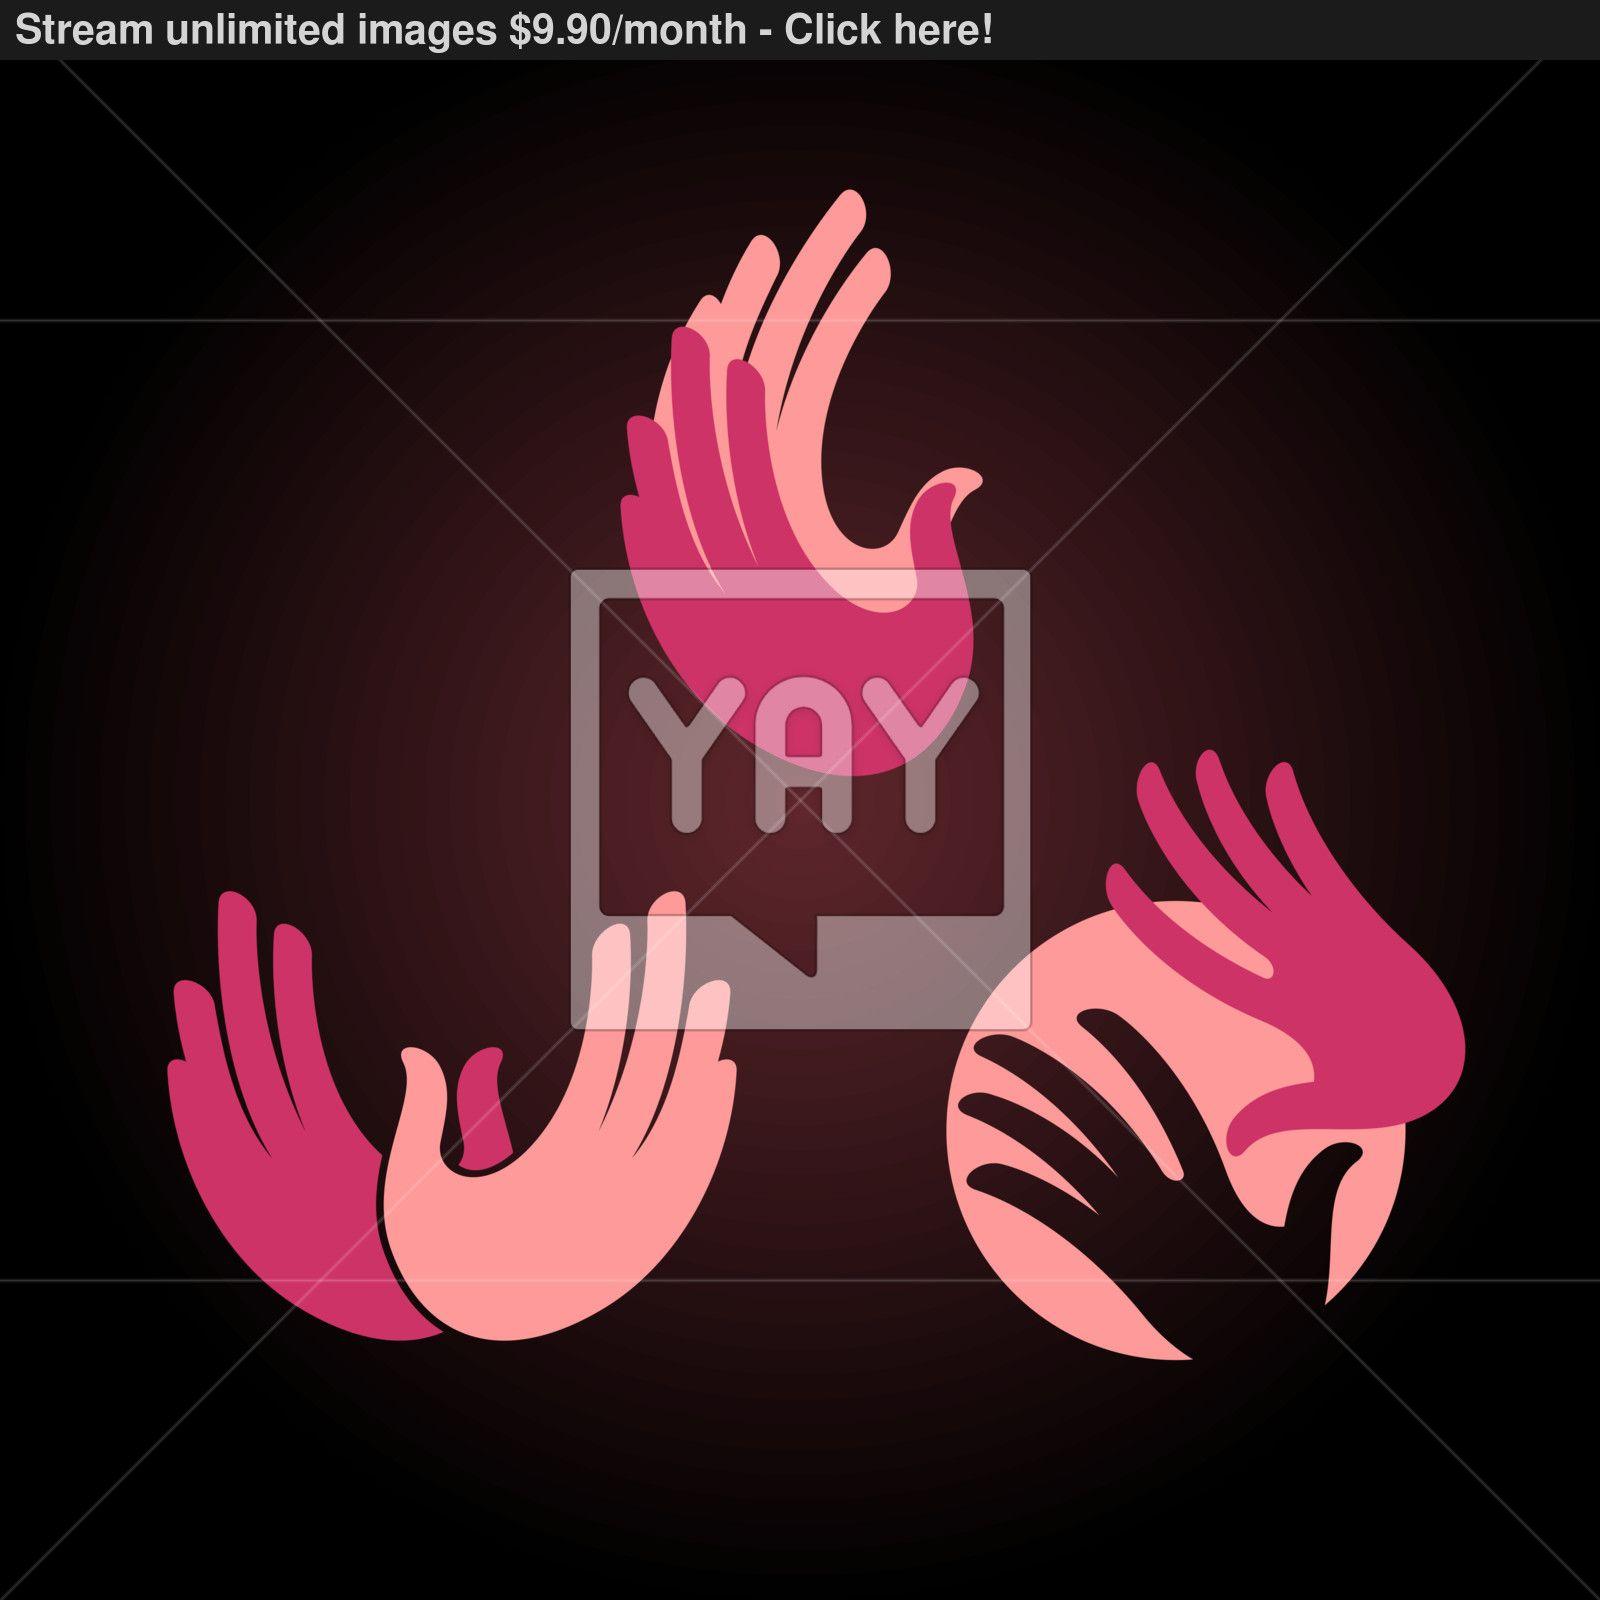 Pink Hands Logo - Hands logo elements vector